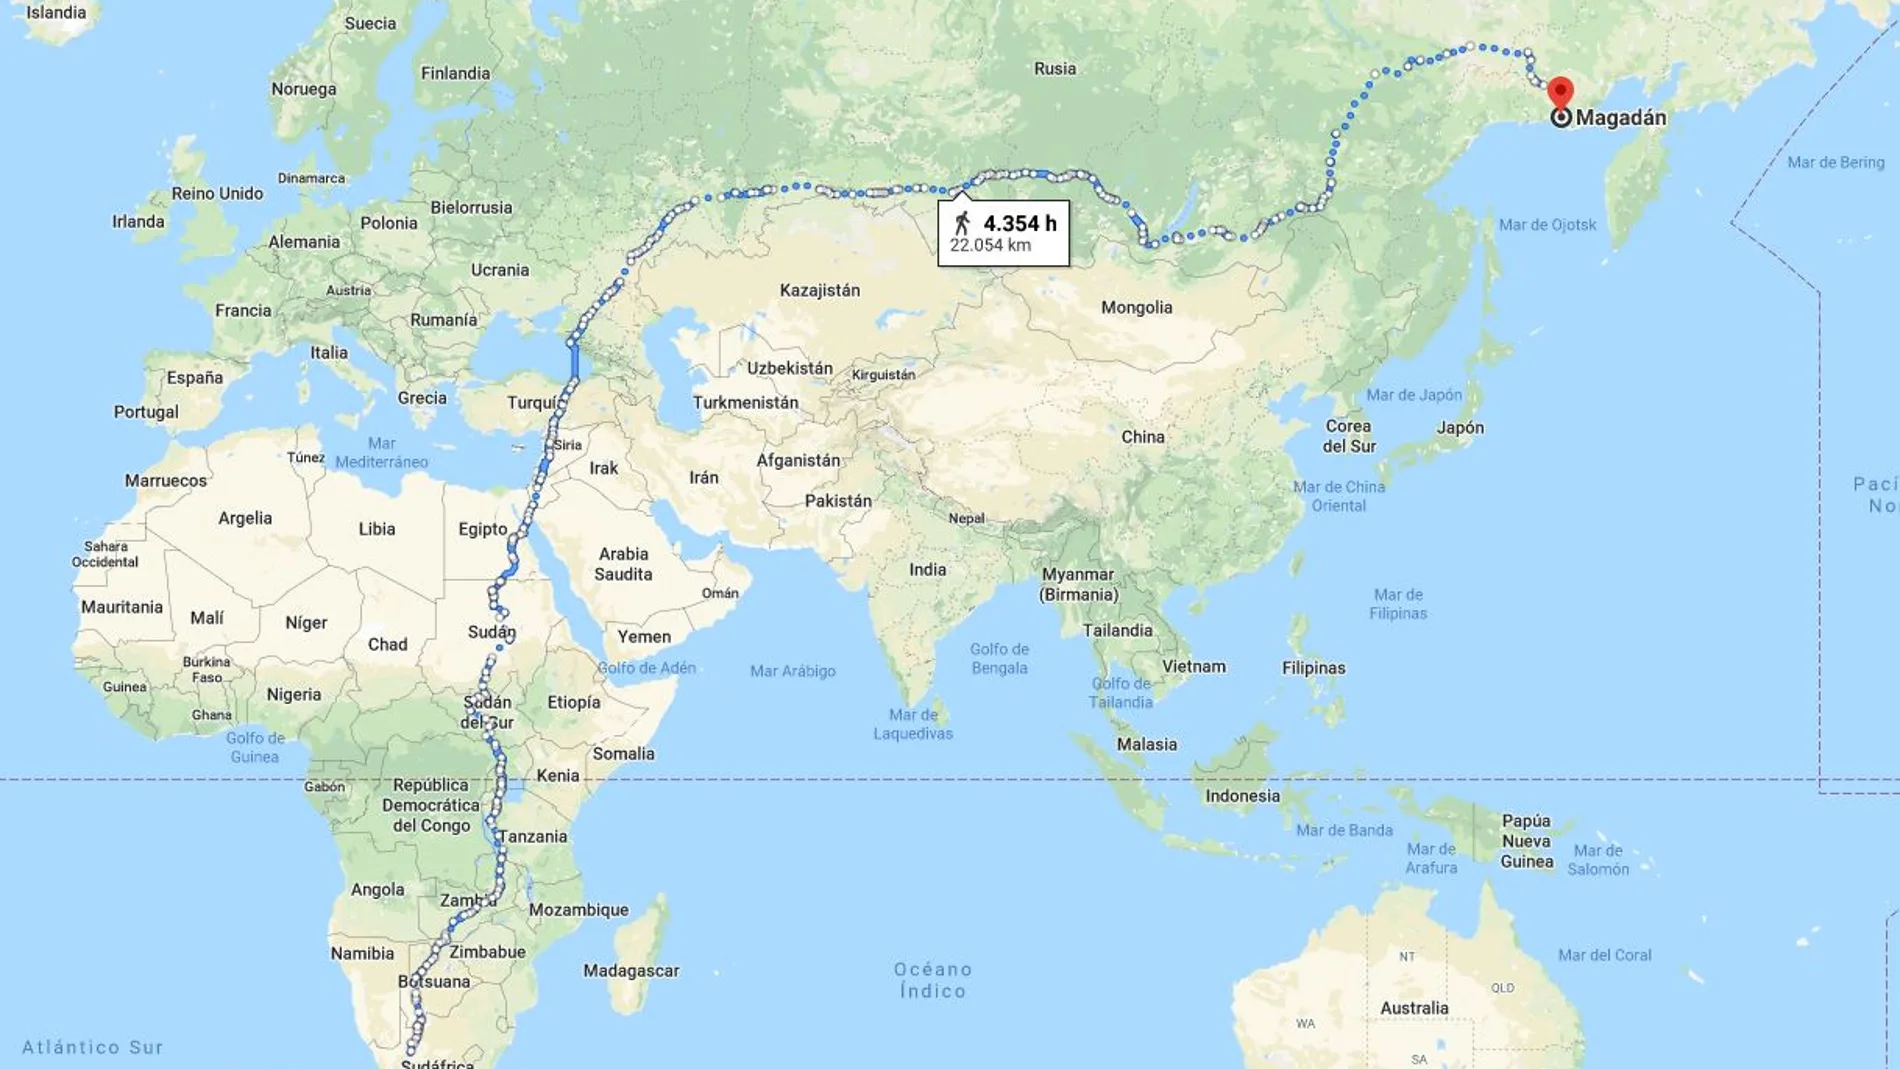 Desde Ciudad del Cabo a Magadán hay 23.000 kilómetros de distancia / Google Maps